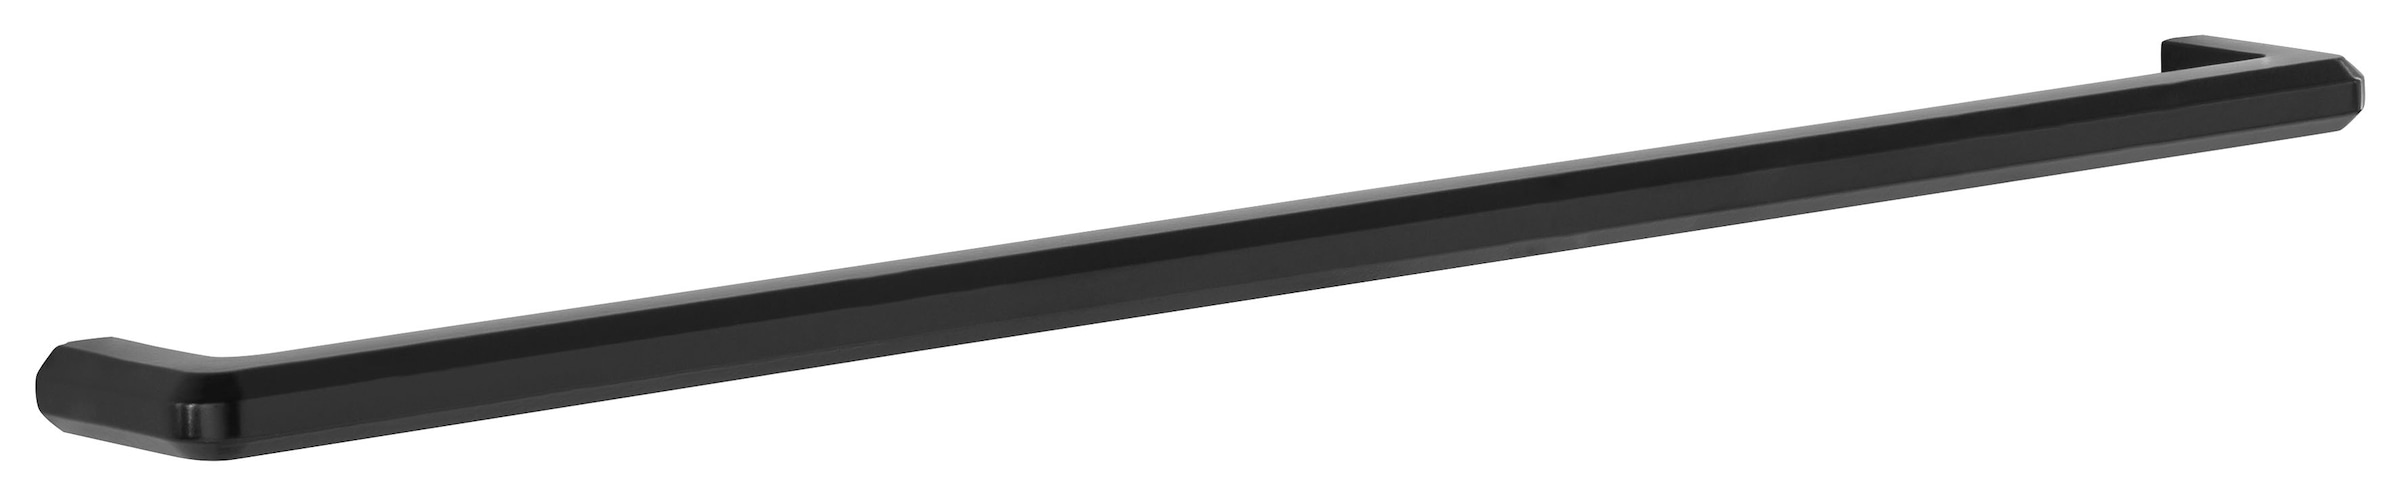 HELD MÖBEL Klapphängeschrank »Tulsa«, 110 cm breit, mit 1 Klappe, schwarzer  Metallgriff, MDF Front jetzt im %Sale